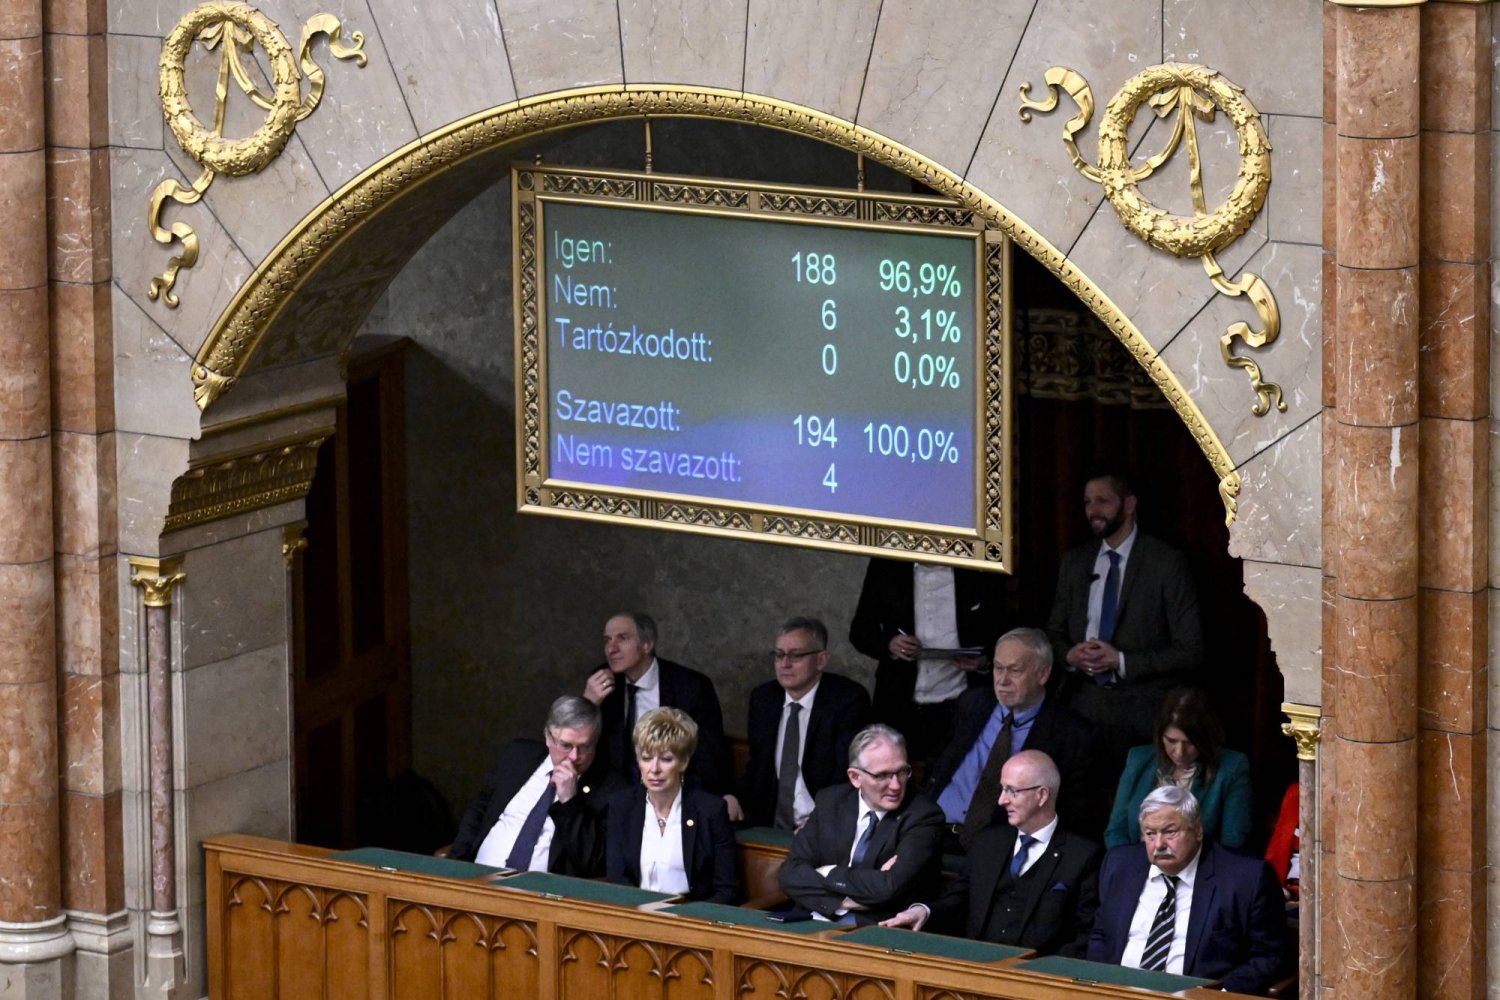 لوحة في البرلمان المجري تظهر نتائج التصويت على مصادقة عضوية السويد بـ«الناتو» في بودابست الاثنين (أ.ب)